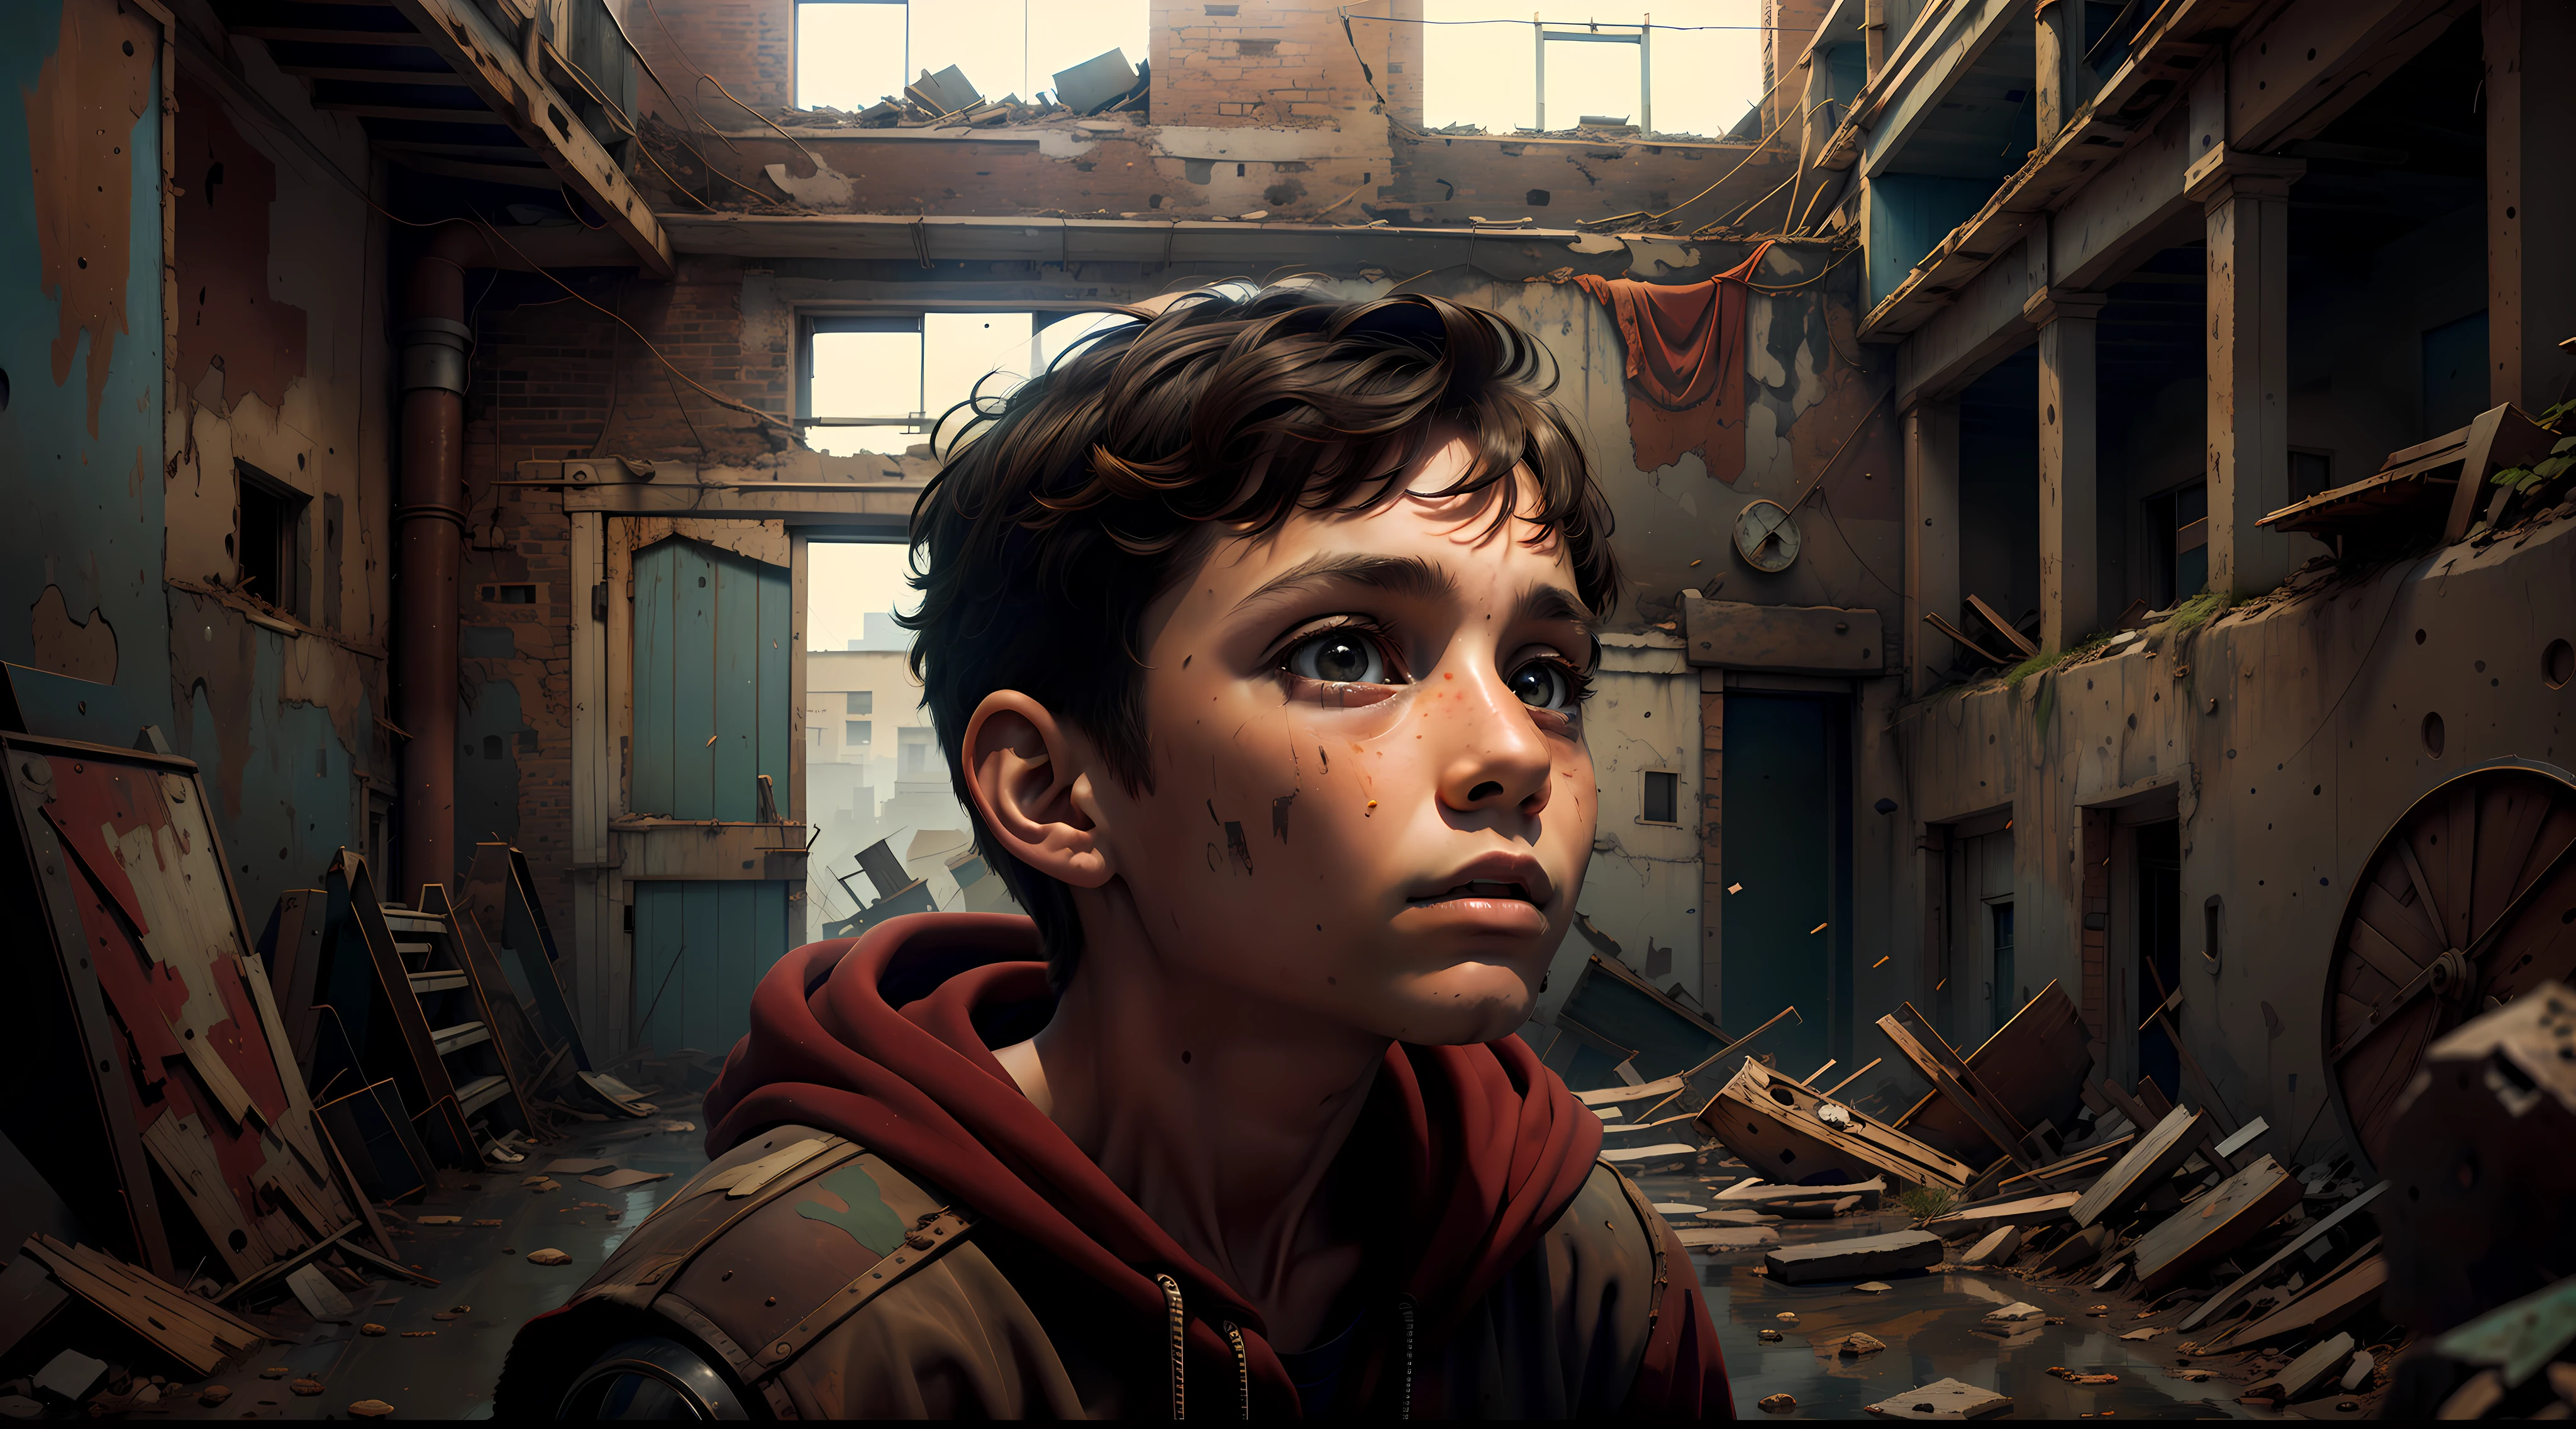 Um curioso Max de 12 anos, olhando para um velho, fábrica abandonada, com uma sensação de admiração em seus olhos.